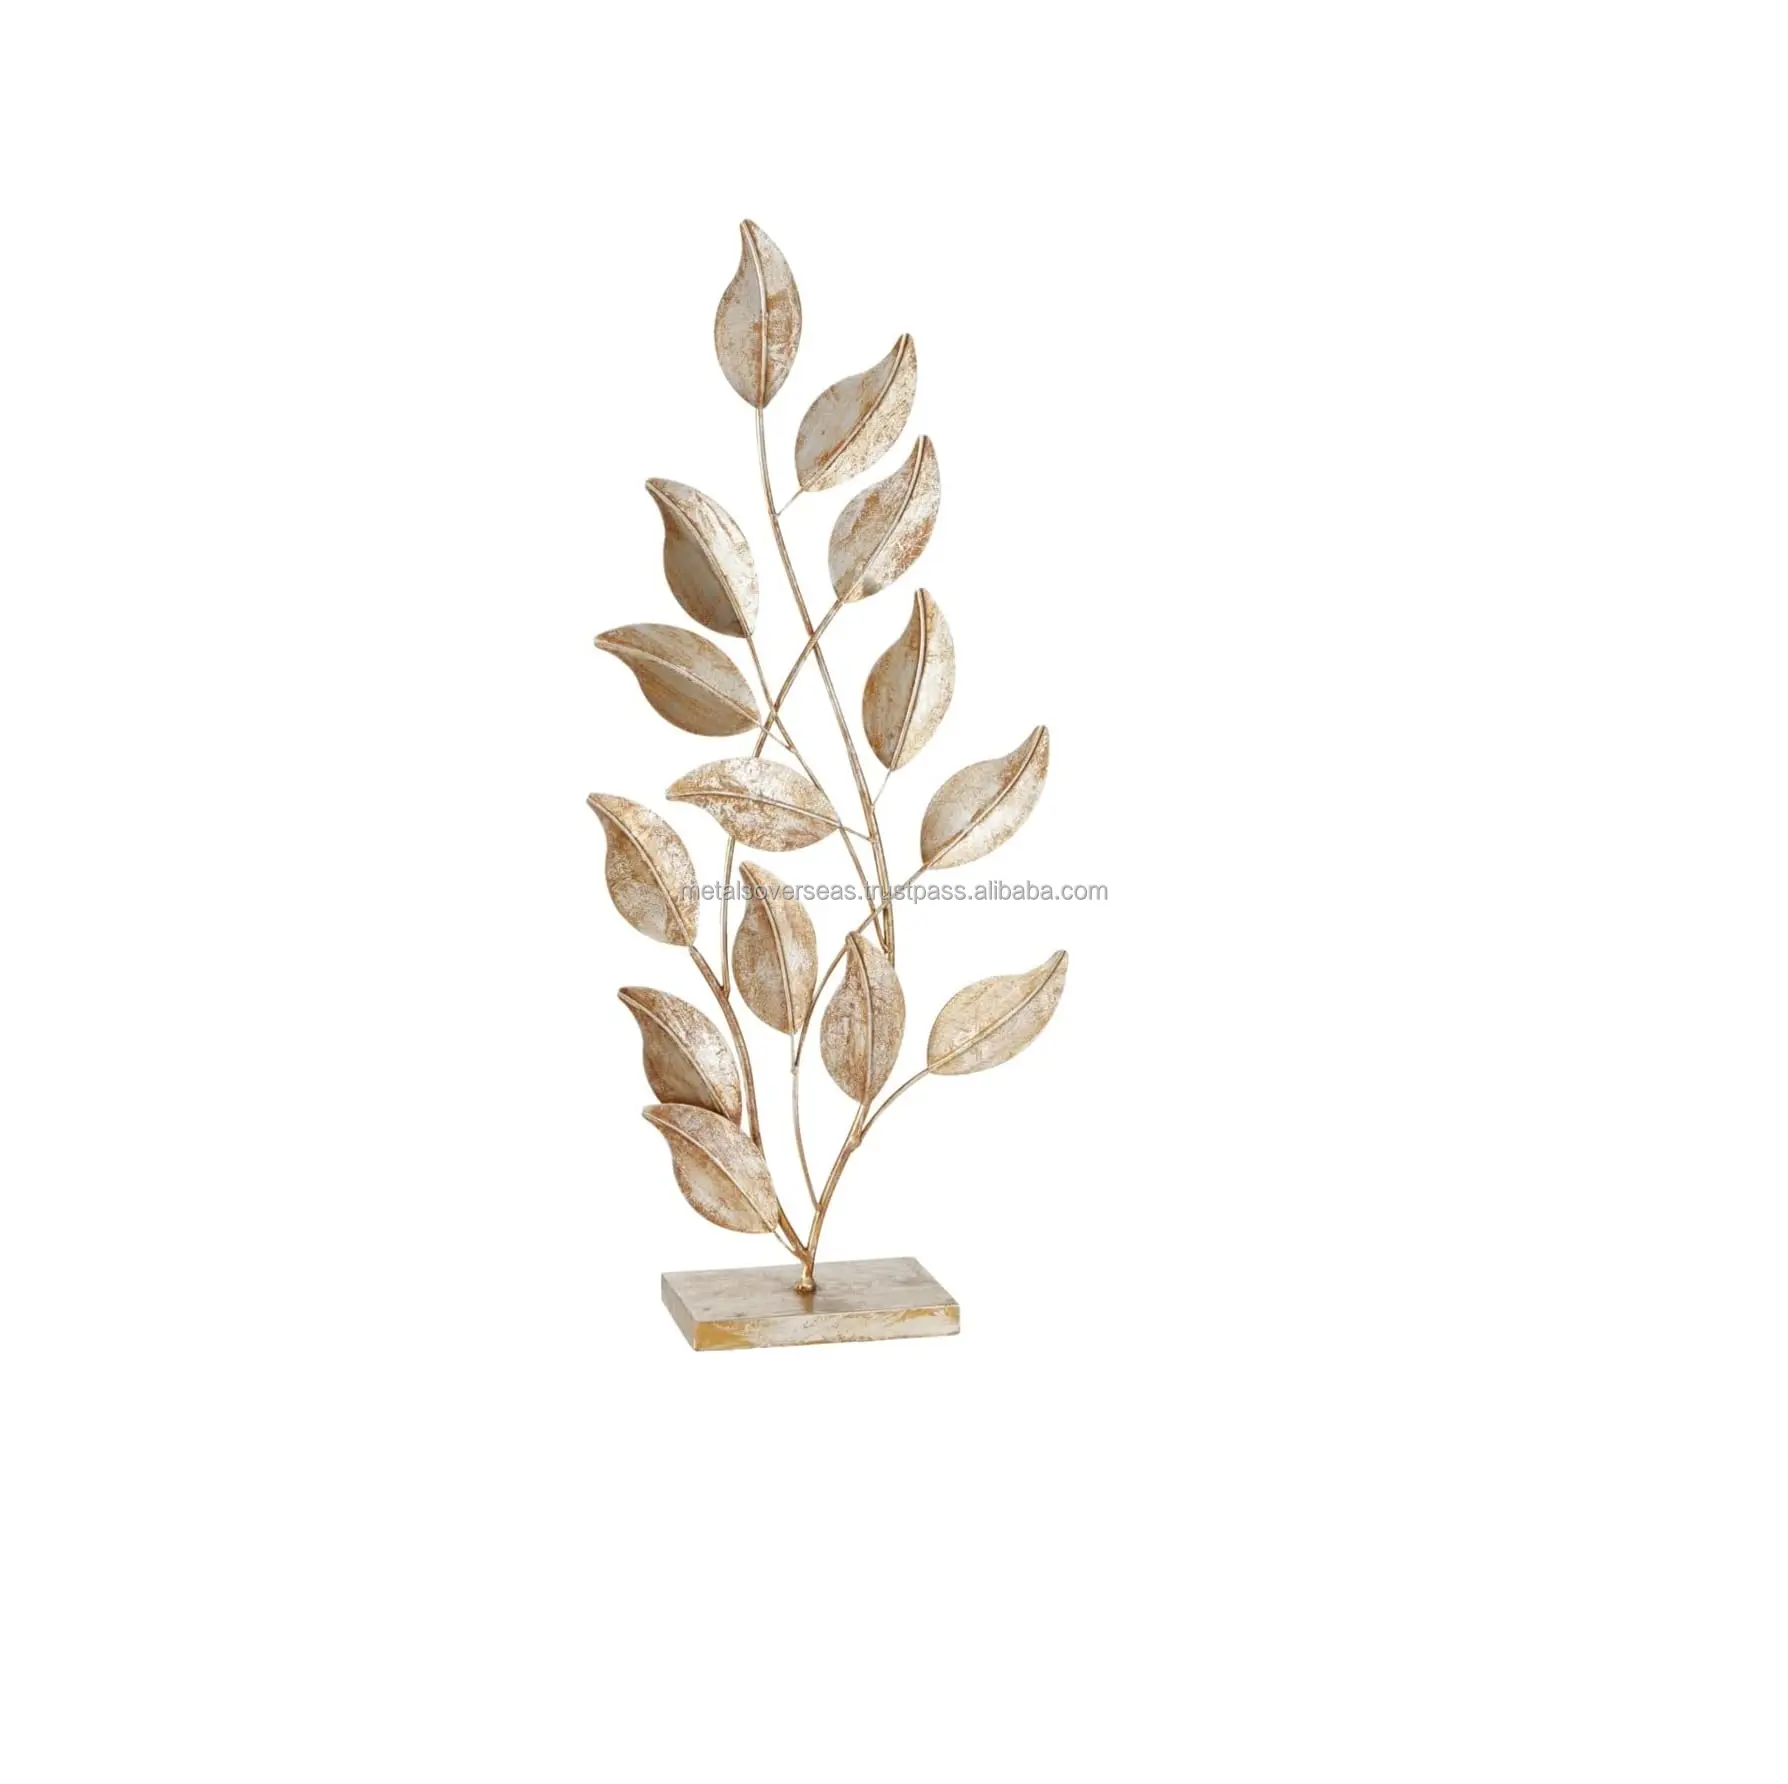 Groothandelsprijs Modernistische Botanische Olijfbladeren Sculptuur Goud Metaal Verguld Afgewerkte Botanische Stengels En Bladeren Gouden Verguld